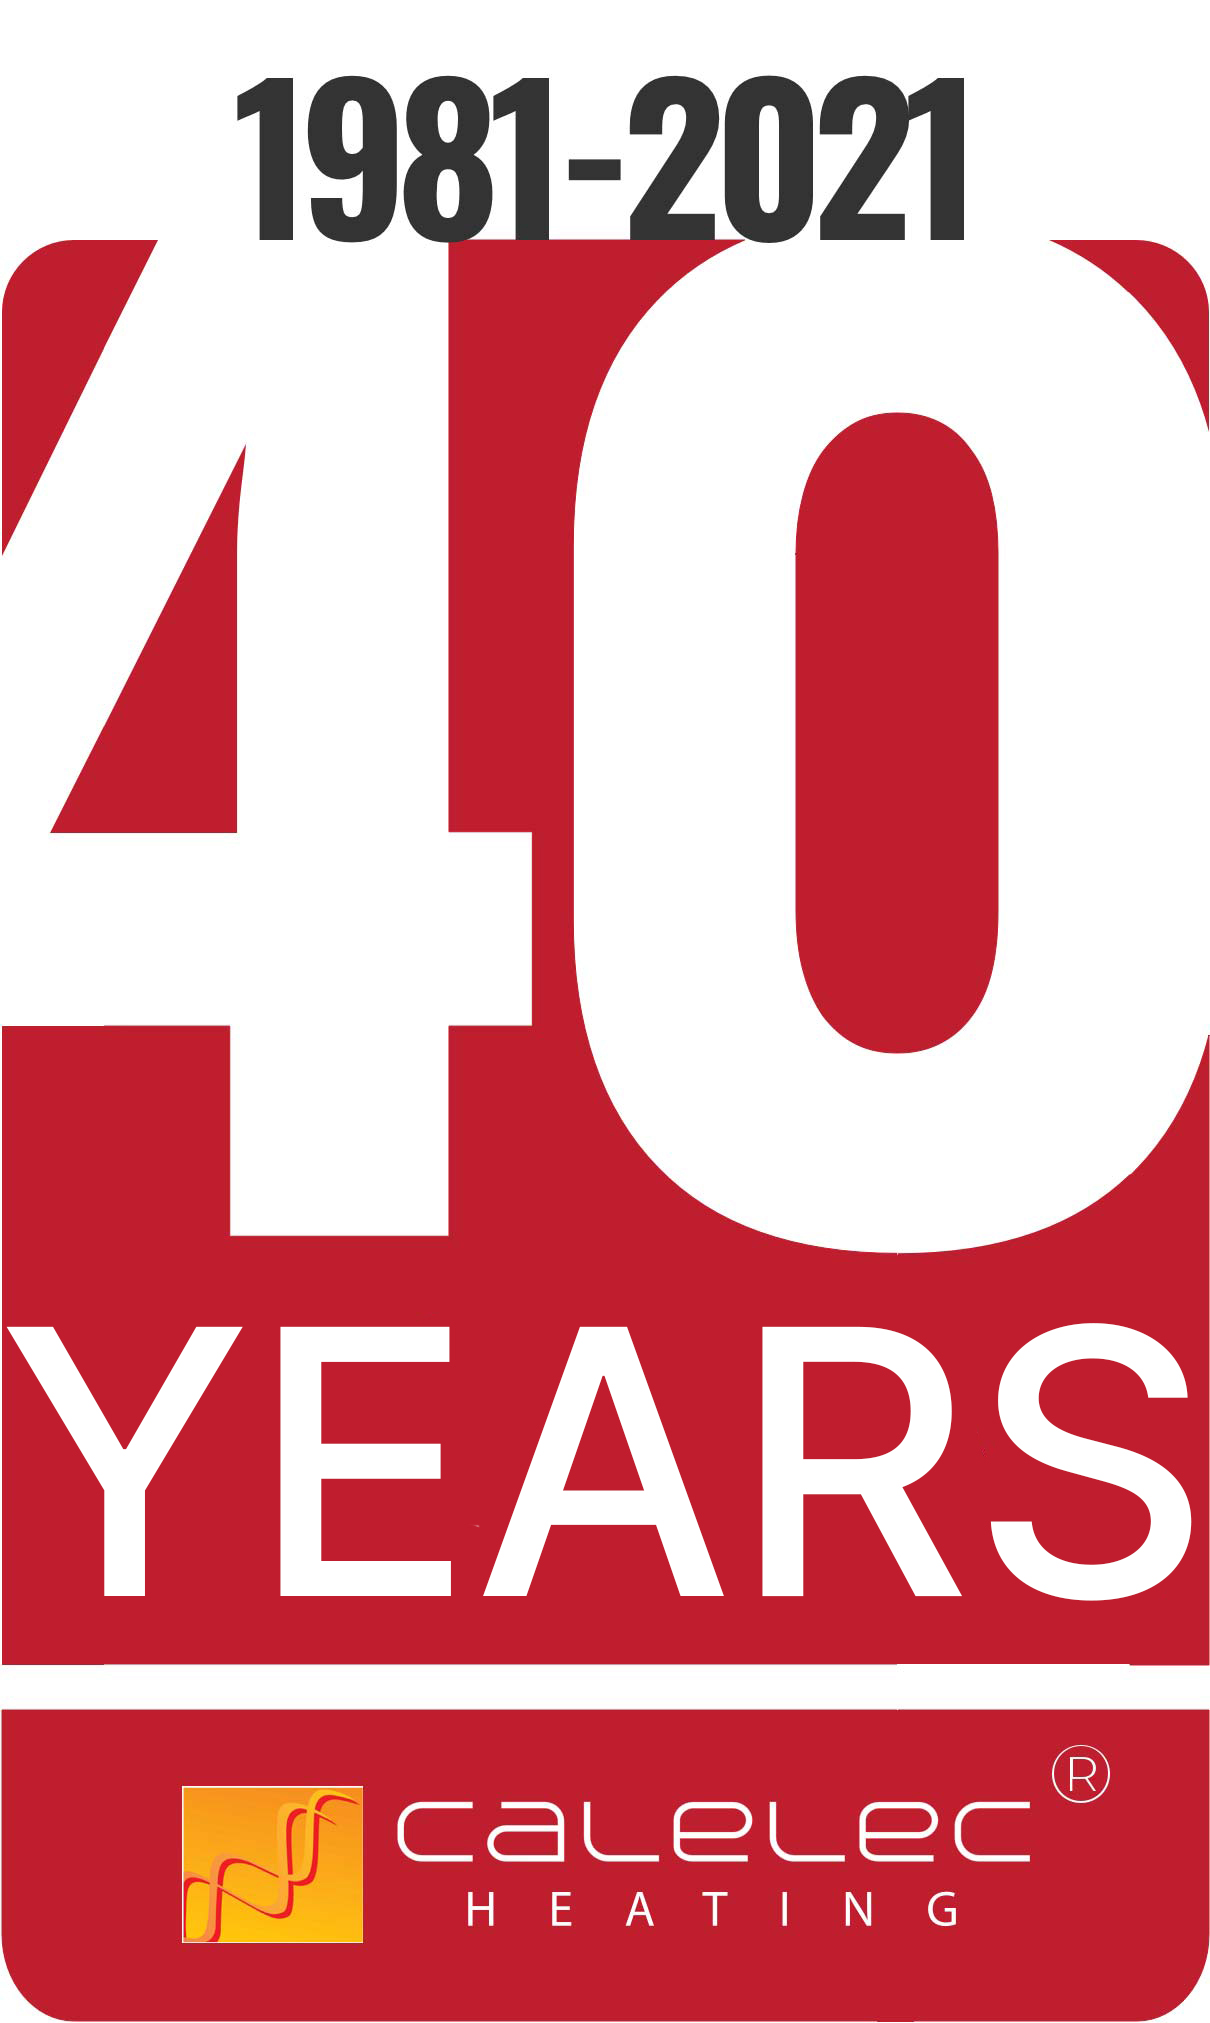 celebrating 40 years